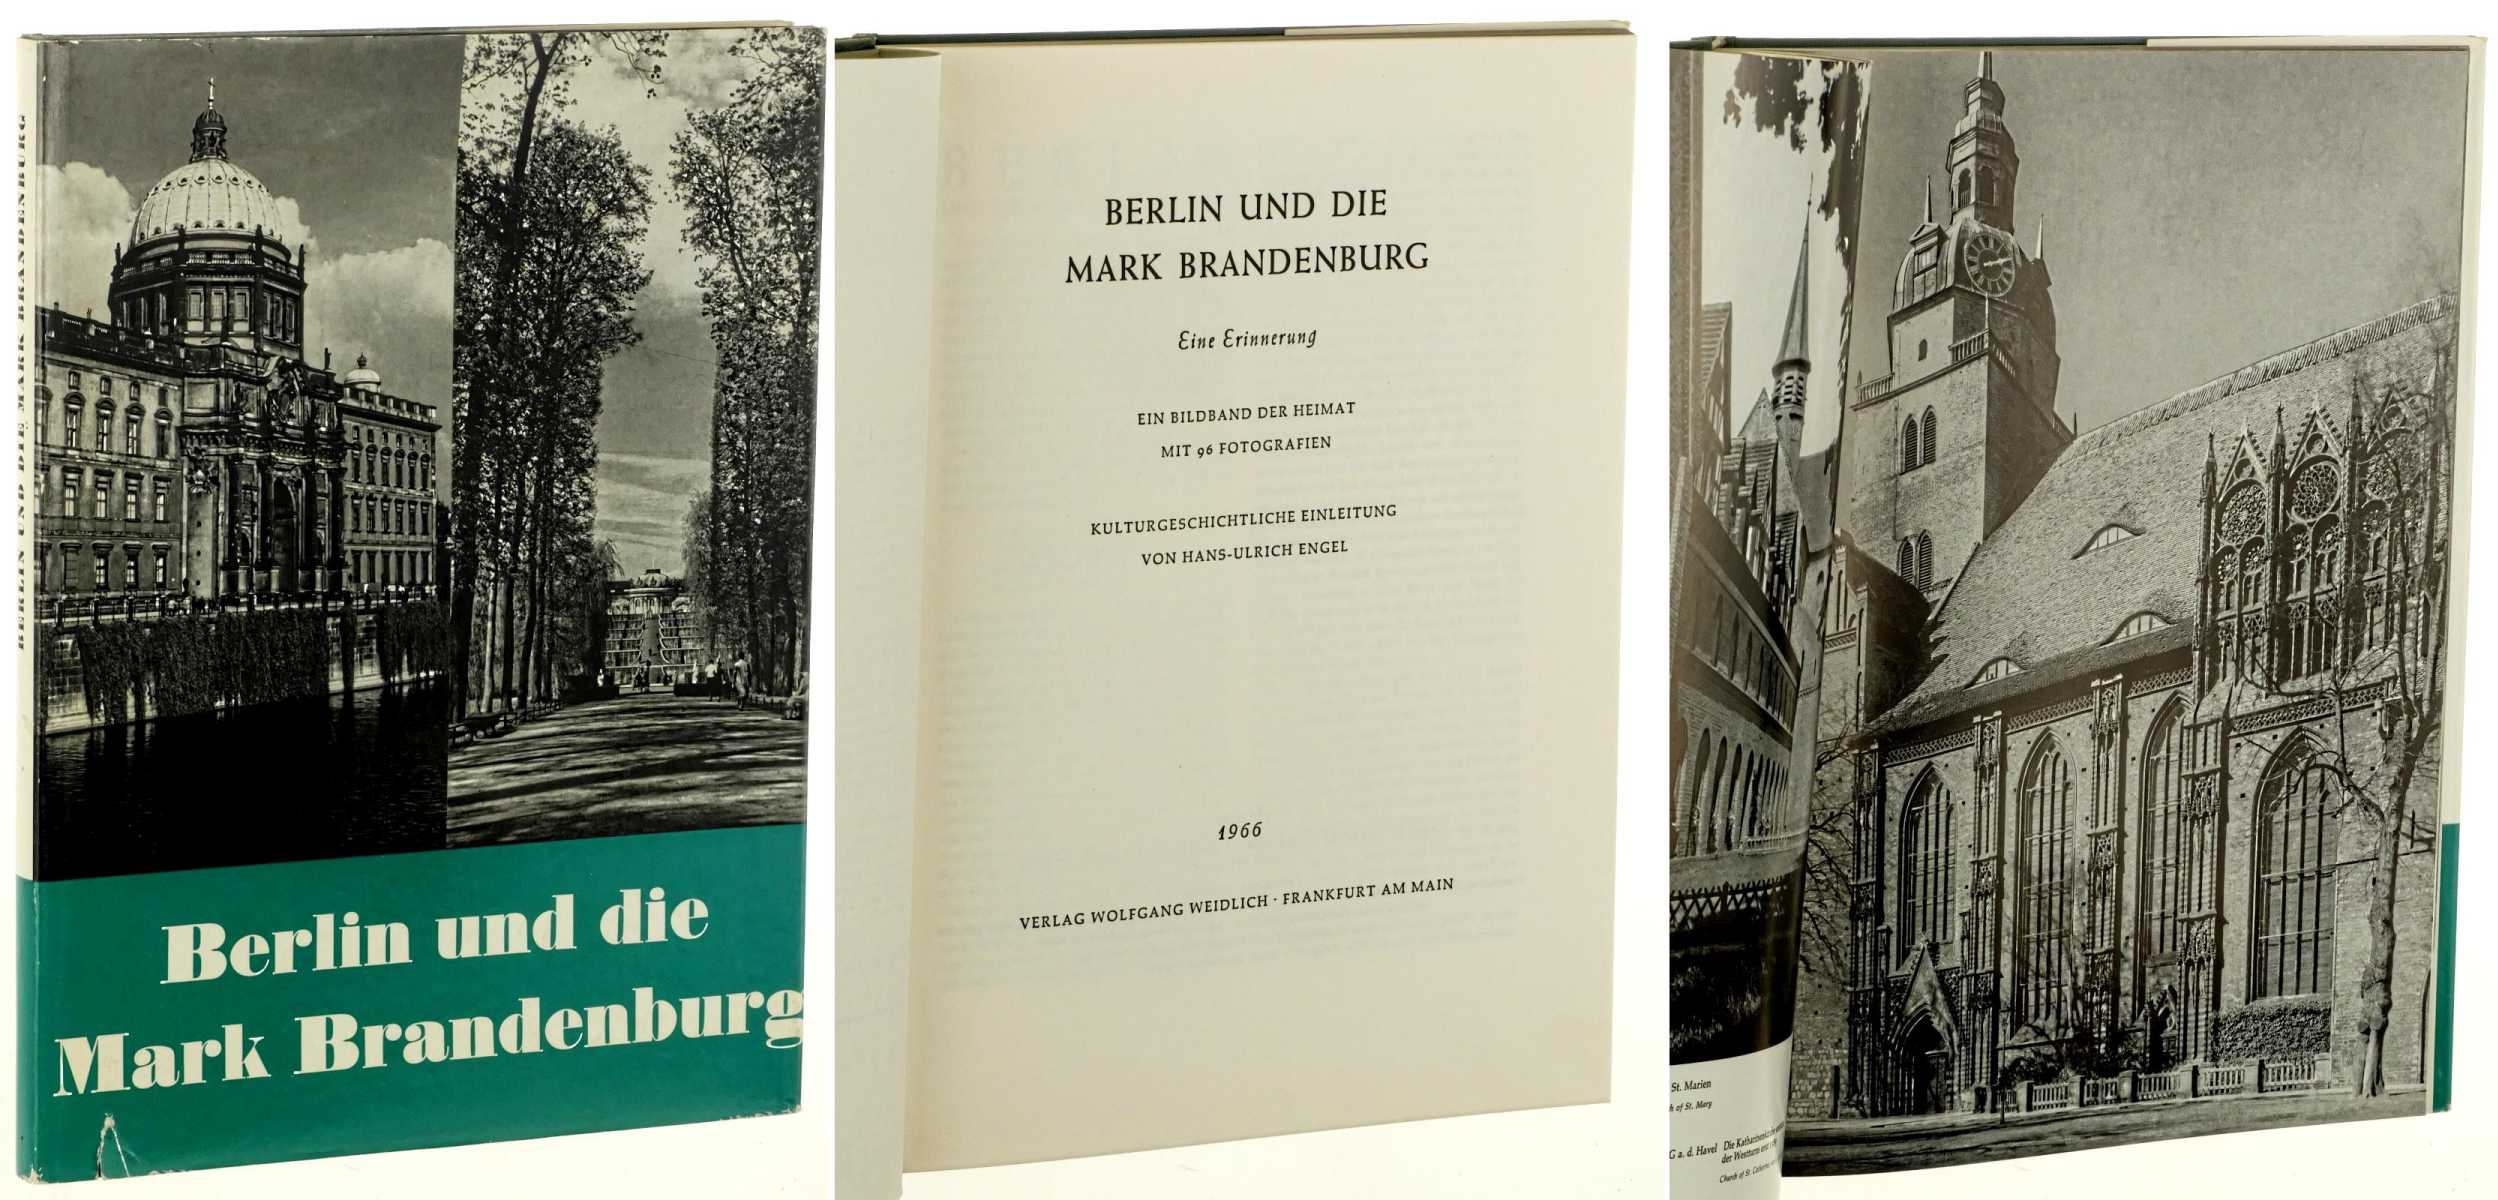   Berlin und die Mark Brandenburg. Eine Erinnerung. Ein Bildband der Heimat. Mit 96 Fotografien. Kulturgeschichtliche Einleitung von Hans-Ulrich Engel. 